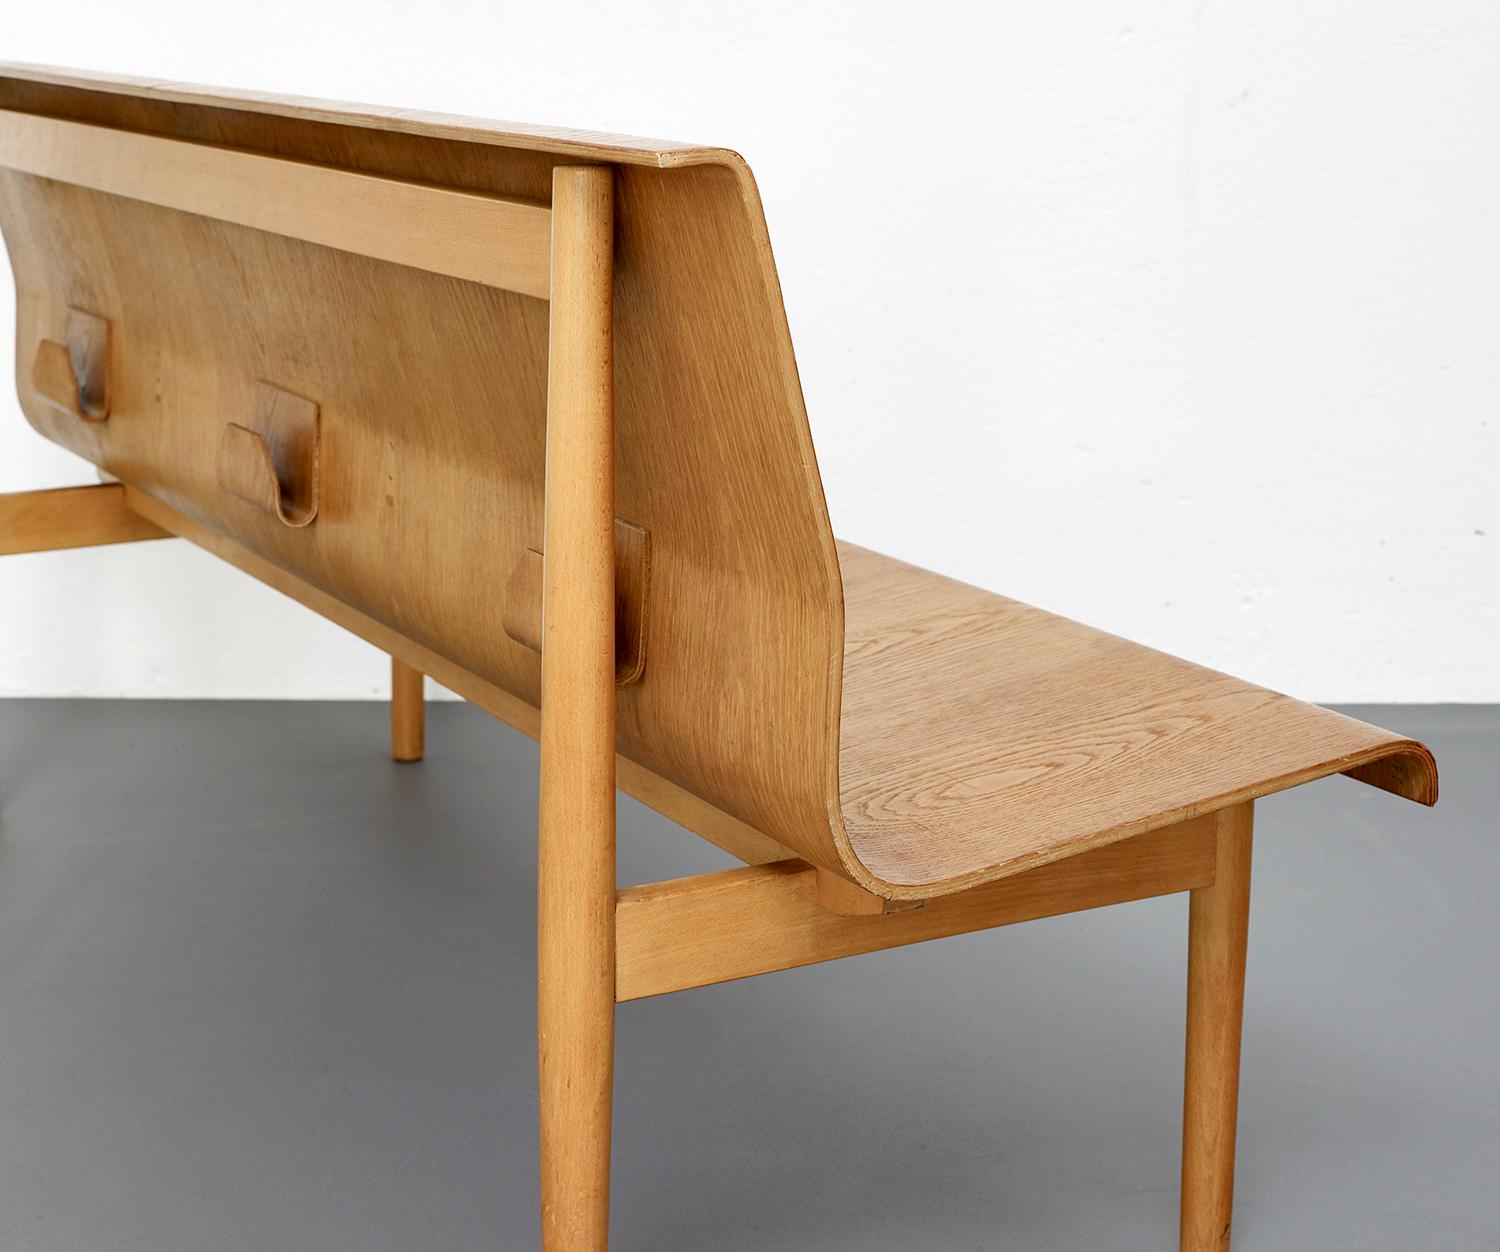 European Mid-Century Modern Scandinavian Plywood Bench in Style of Erik Gunnar Asplund